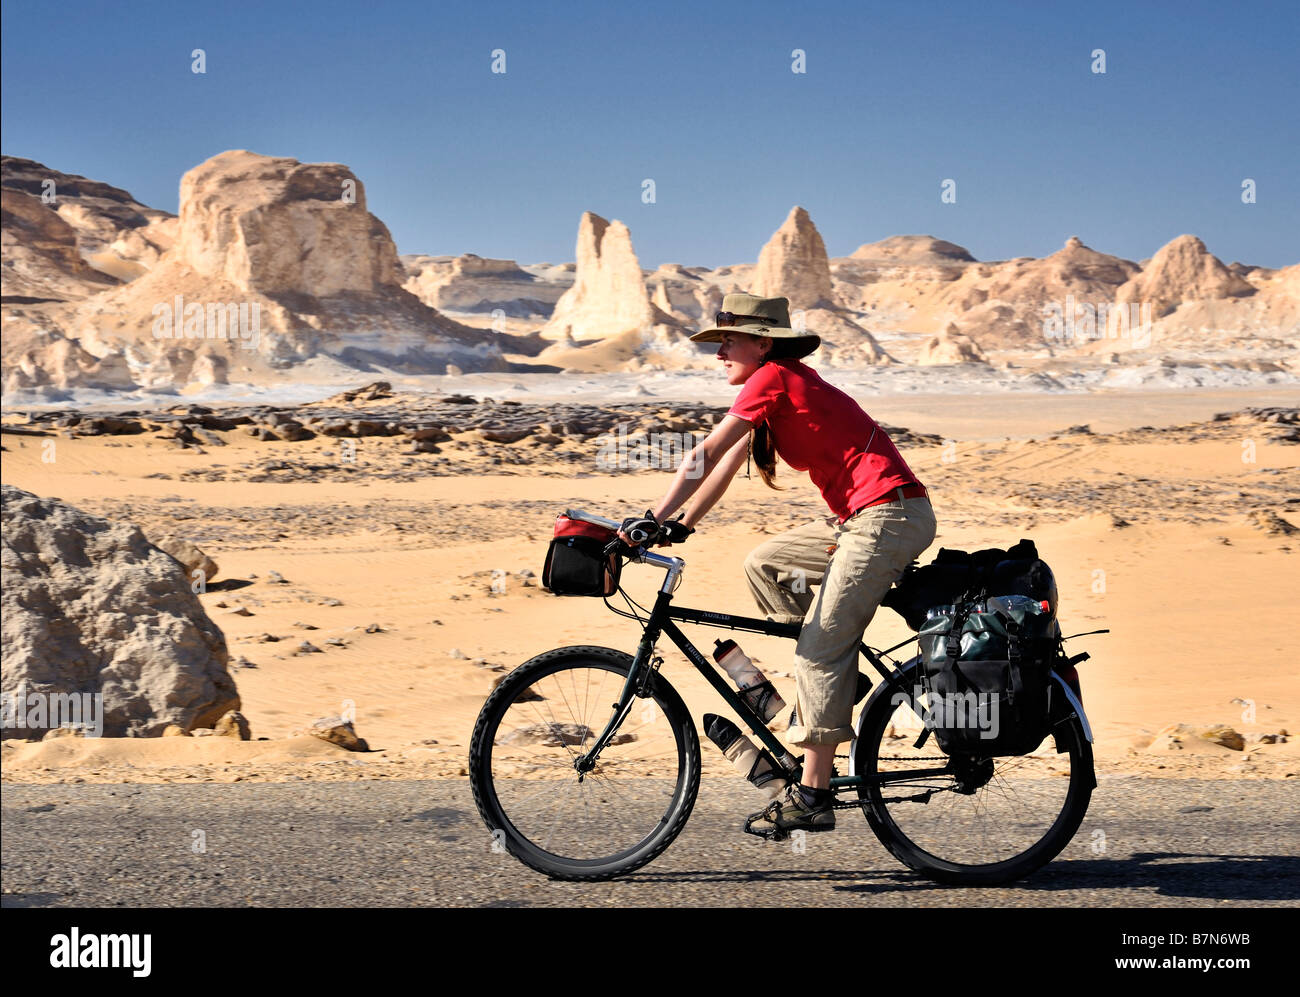 Western girl touring cyclist et location avec arrière-plan de collines inhabituelle dans le désert blanc de l'ouest de l'Egypte Banque D'Images